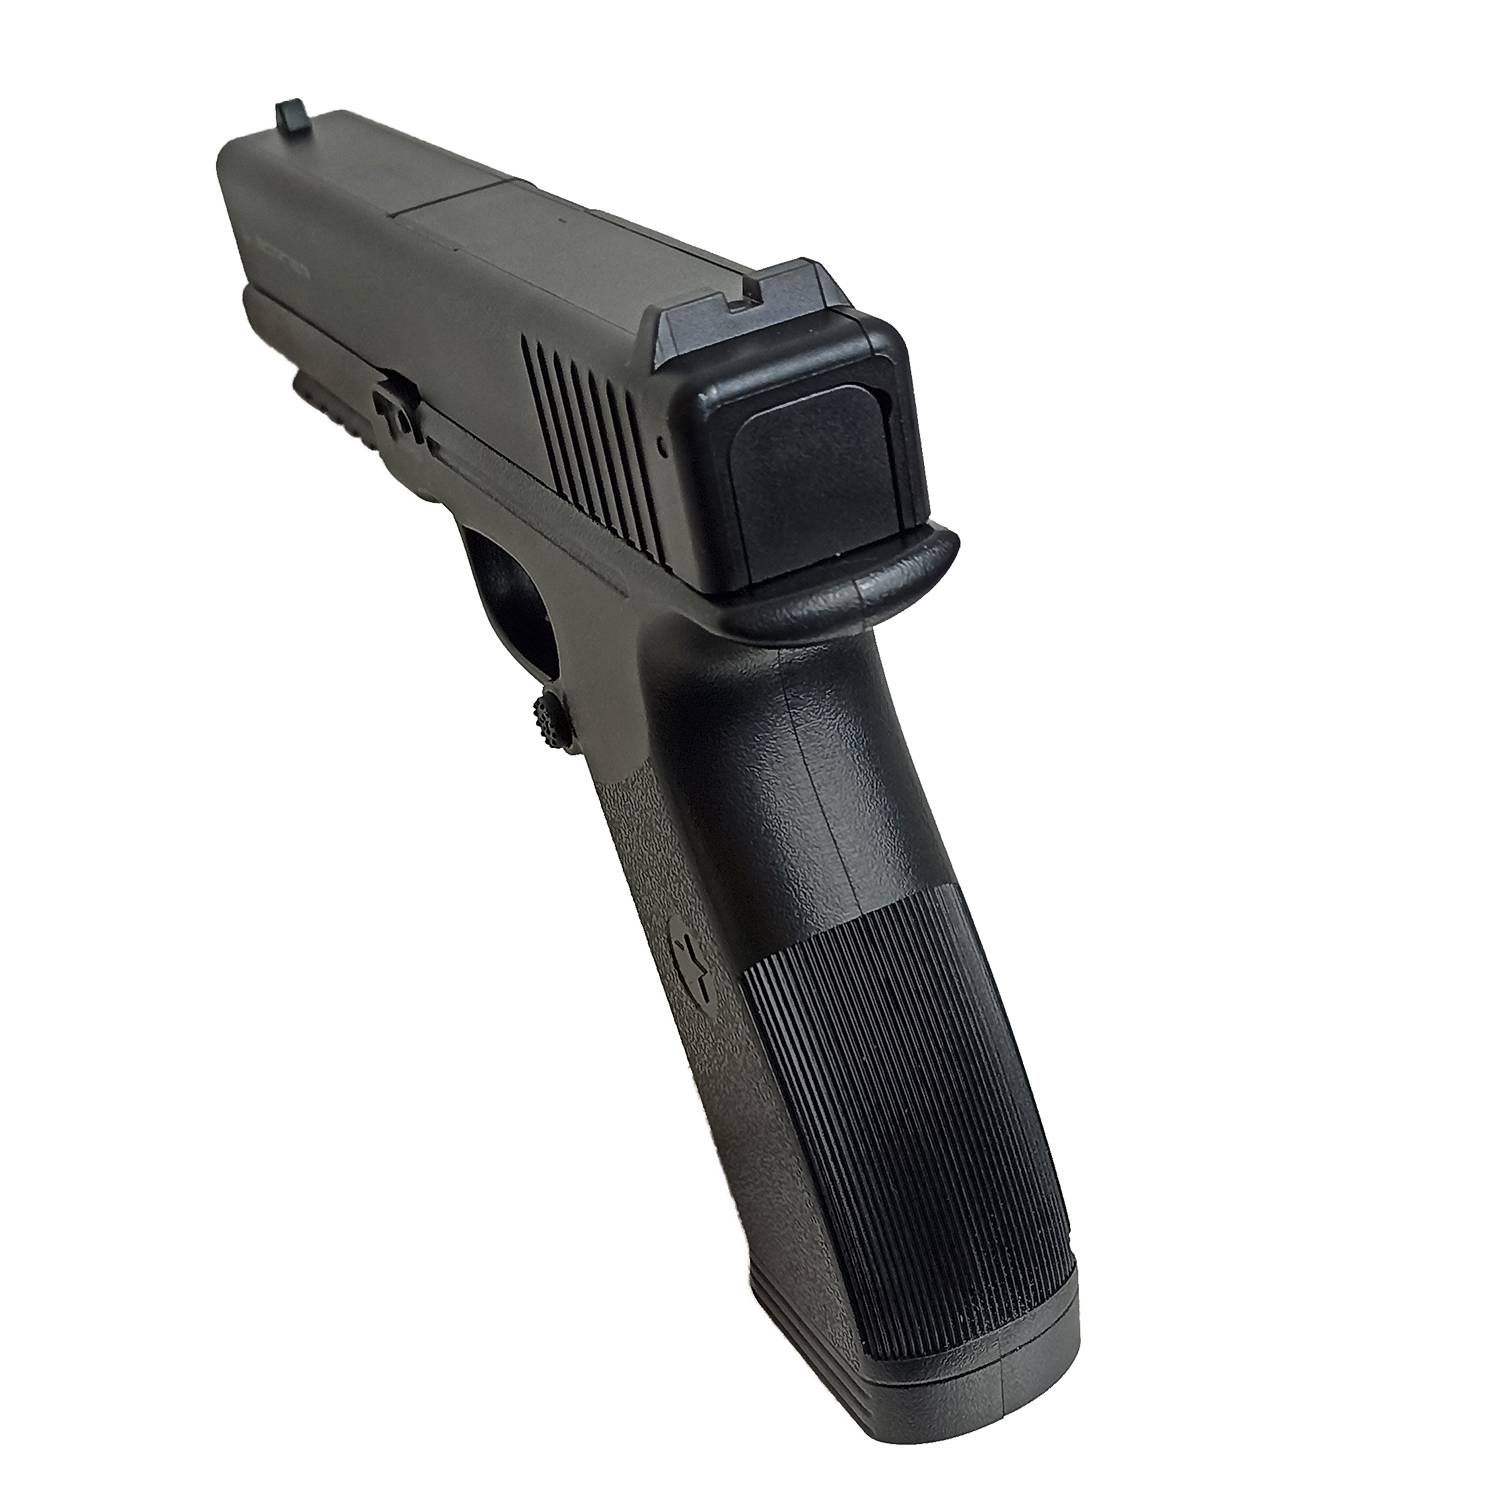 Пистолет пневматический Borner 17, калибр 4,5 мм